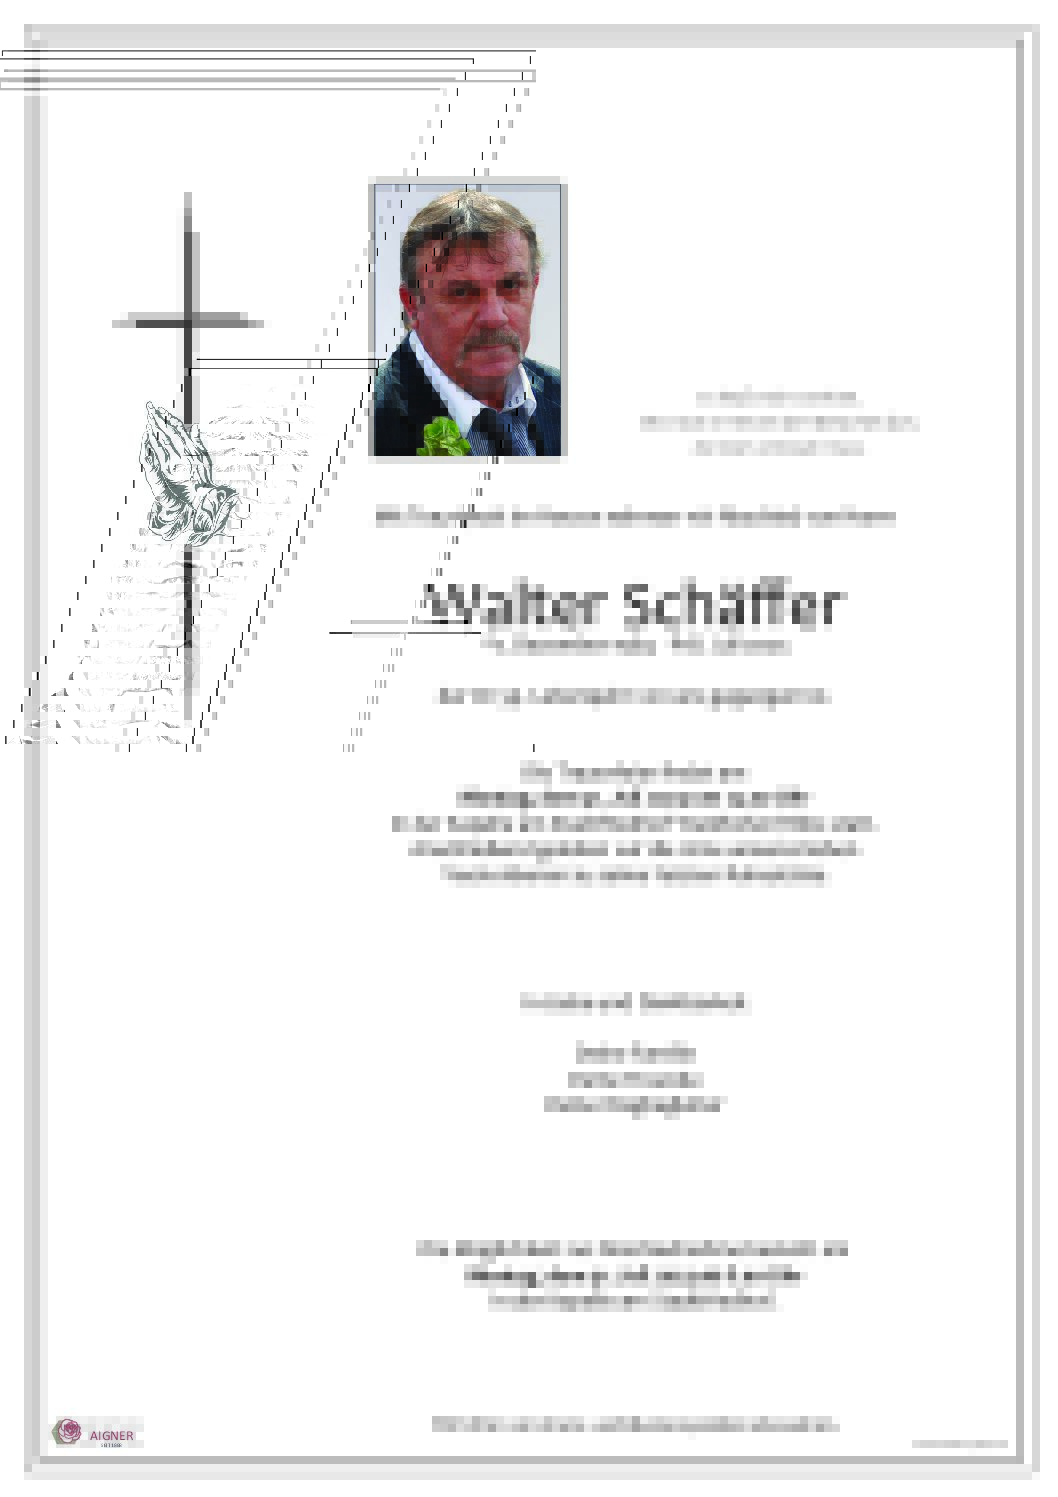 Walter Schäffer